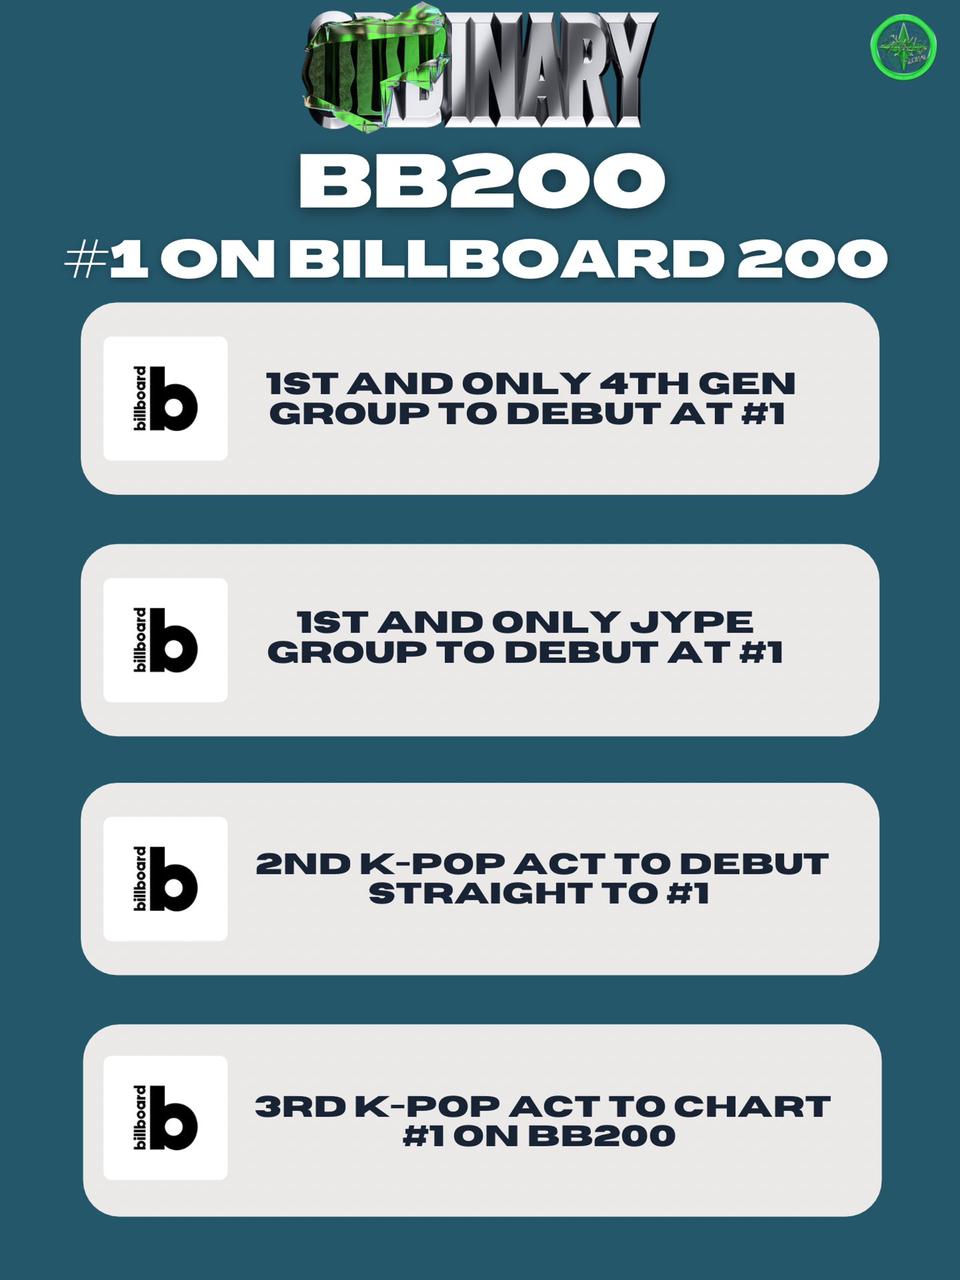 ODDINARY de Stray Kids debuta en la posición #1 de Billboard 200 1